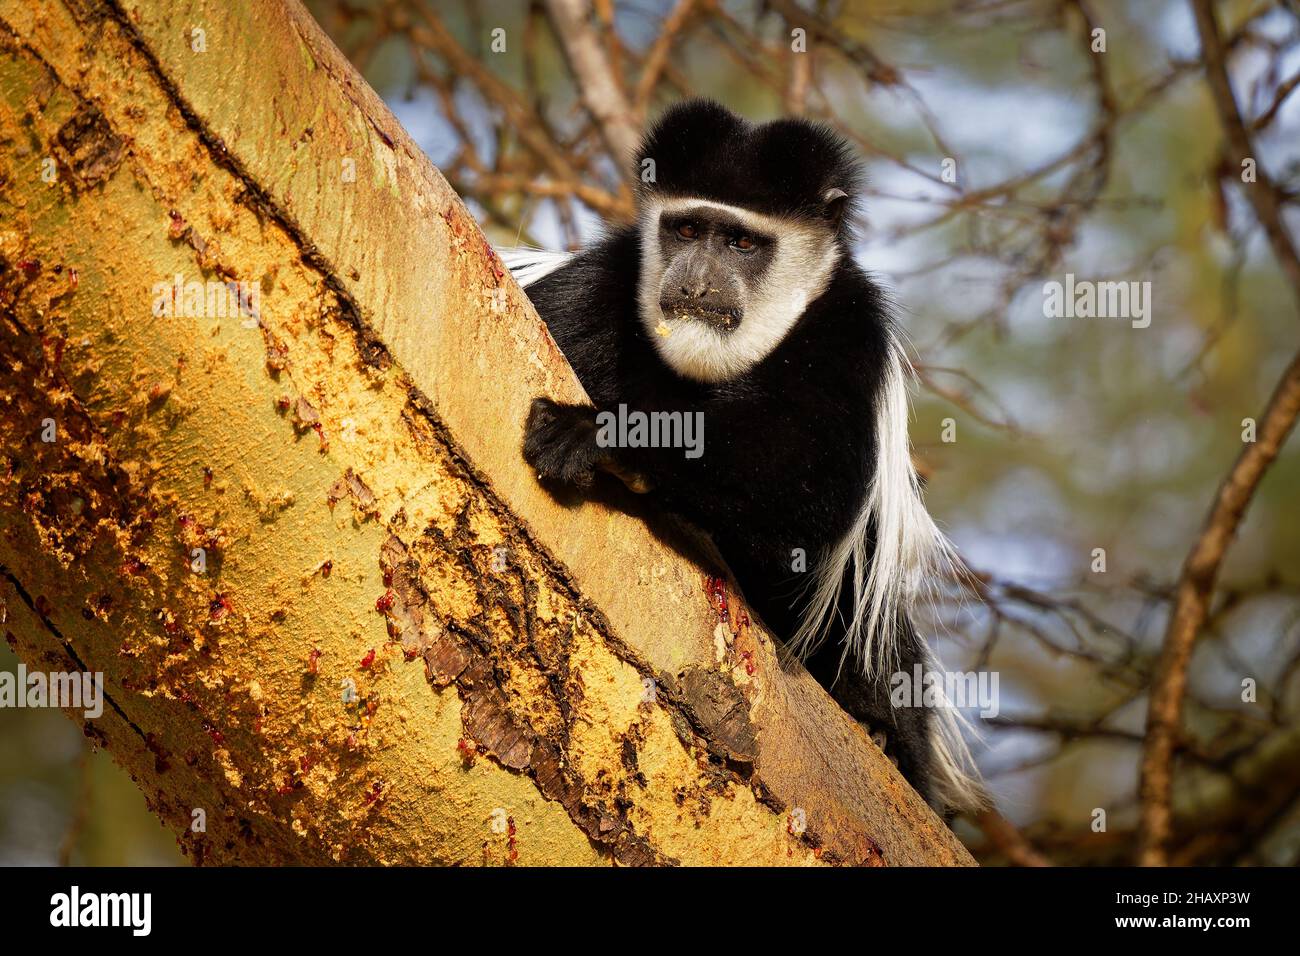 Colobus o colobus blanco y negro - Colobus guereza, mono nativo de África, relacionado con el mono colobus rojo de Piliocolobus, cola larga, mujer con yo Foto de stock